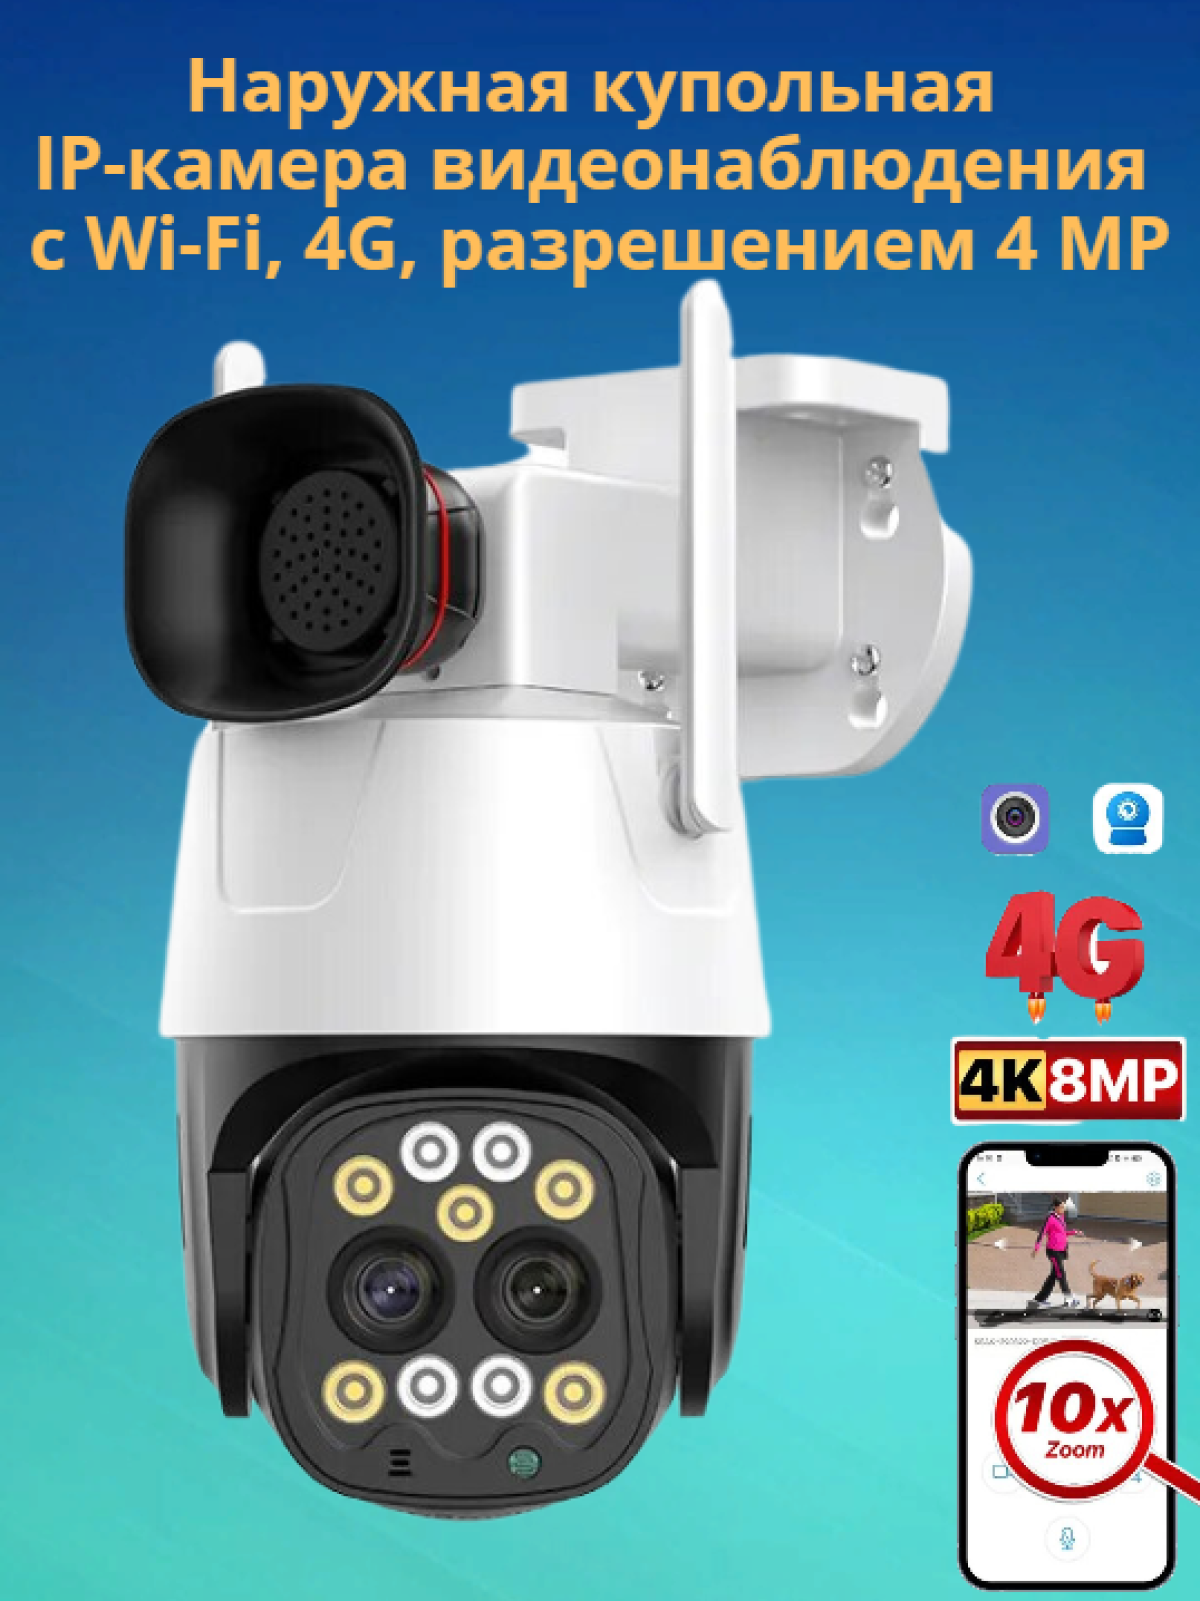 Наружная IР-камера видеонаблюдения с Wi-Fi, 4G, разрешение 4 MP (Д)